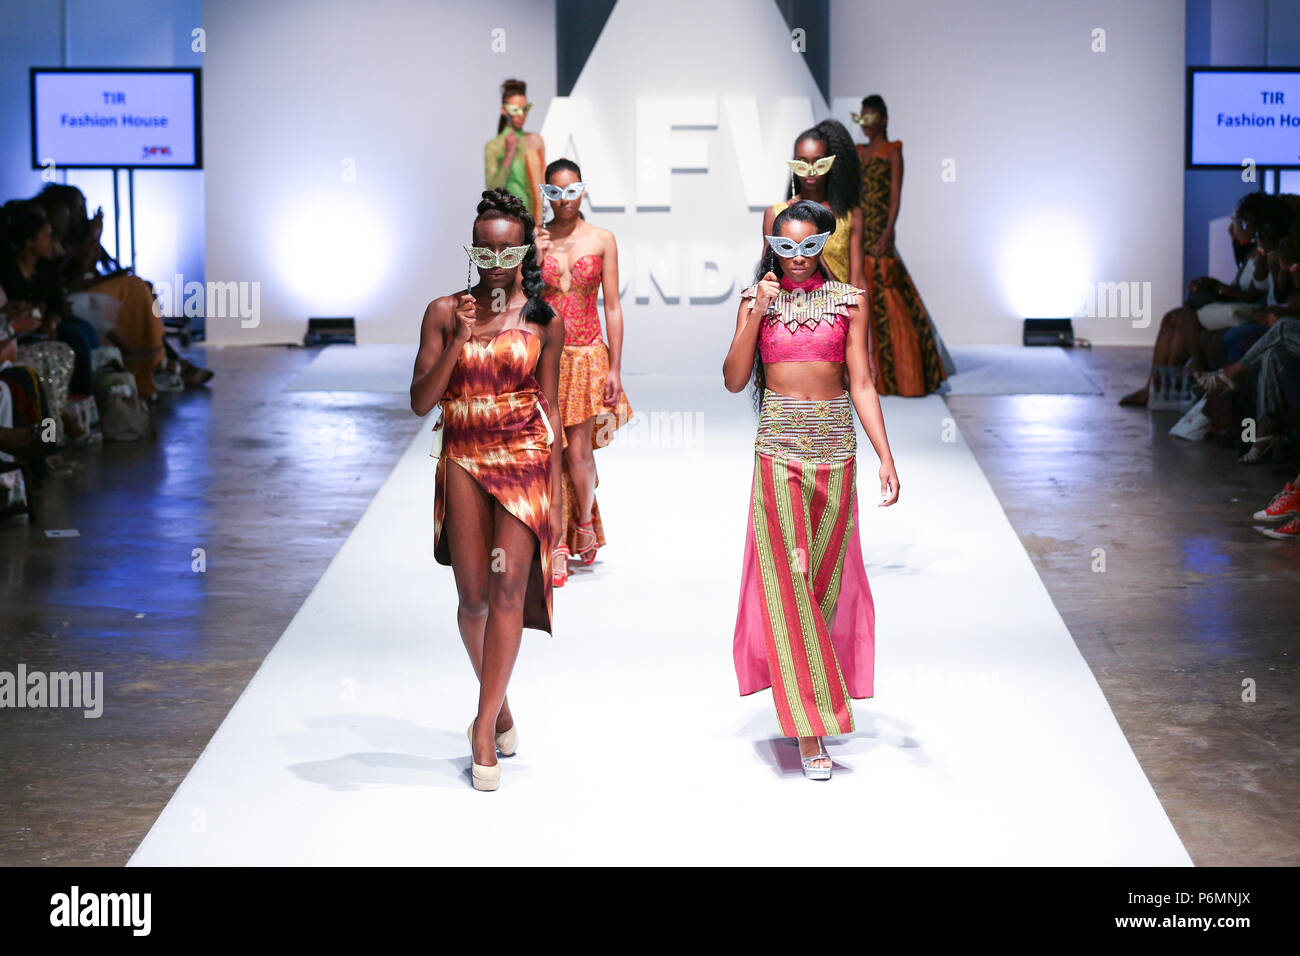 Londres, Royaume-Uni, août 2014, la maison de mode TIR a présenté sa nouvelle collection lors de la Fashion Week de Londres 2014 L'Afrique. Mariusz Goslicki/Alamy Banque D'Images